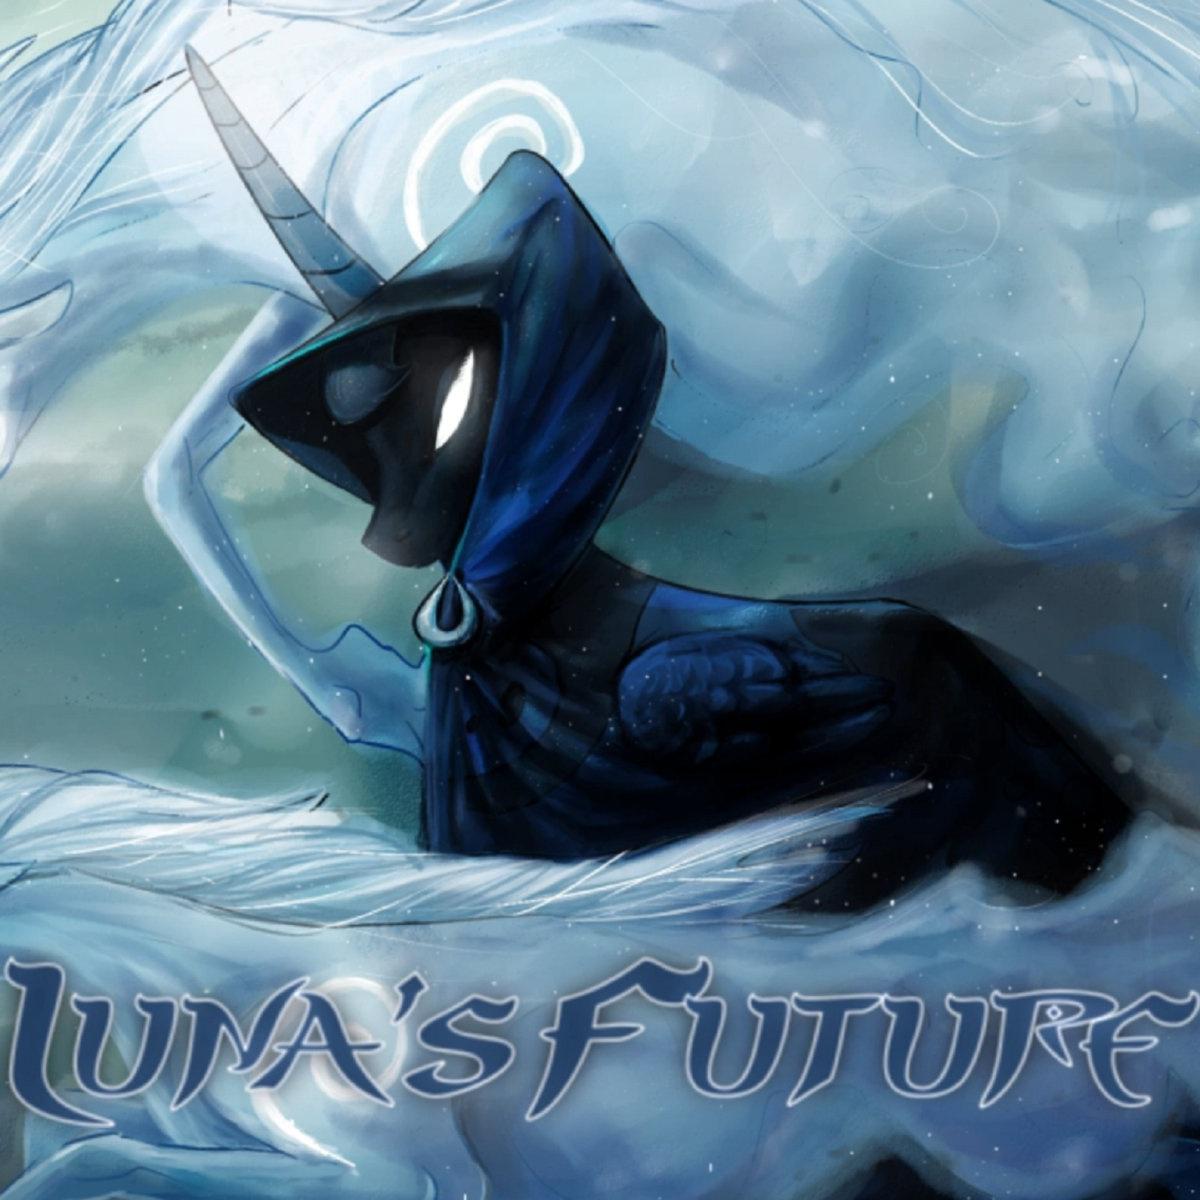 Luna's Future (Jyc Row 2017 Edit)